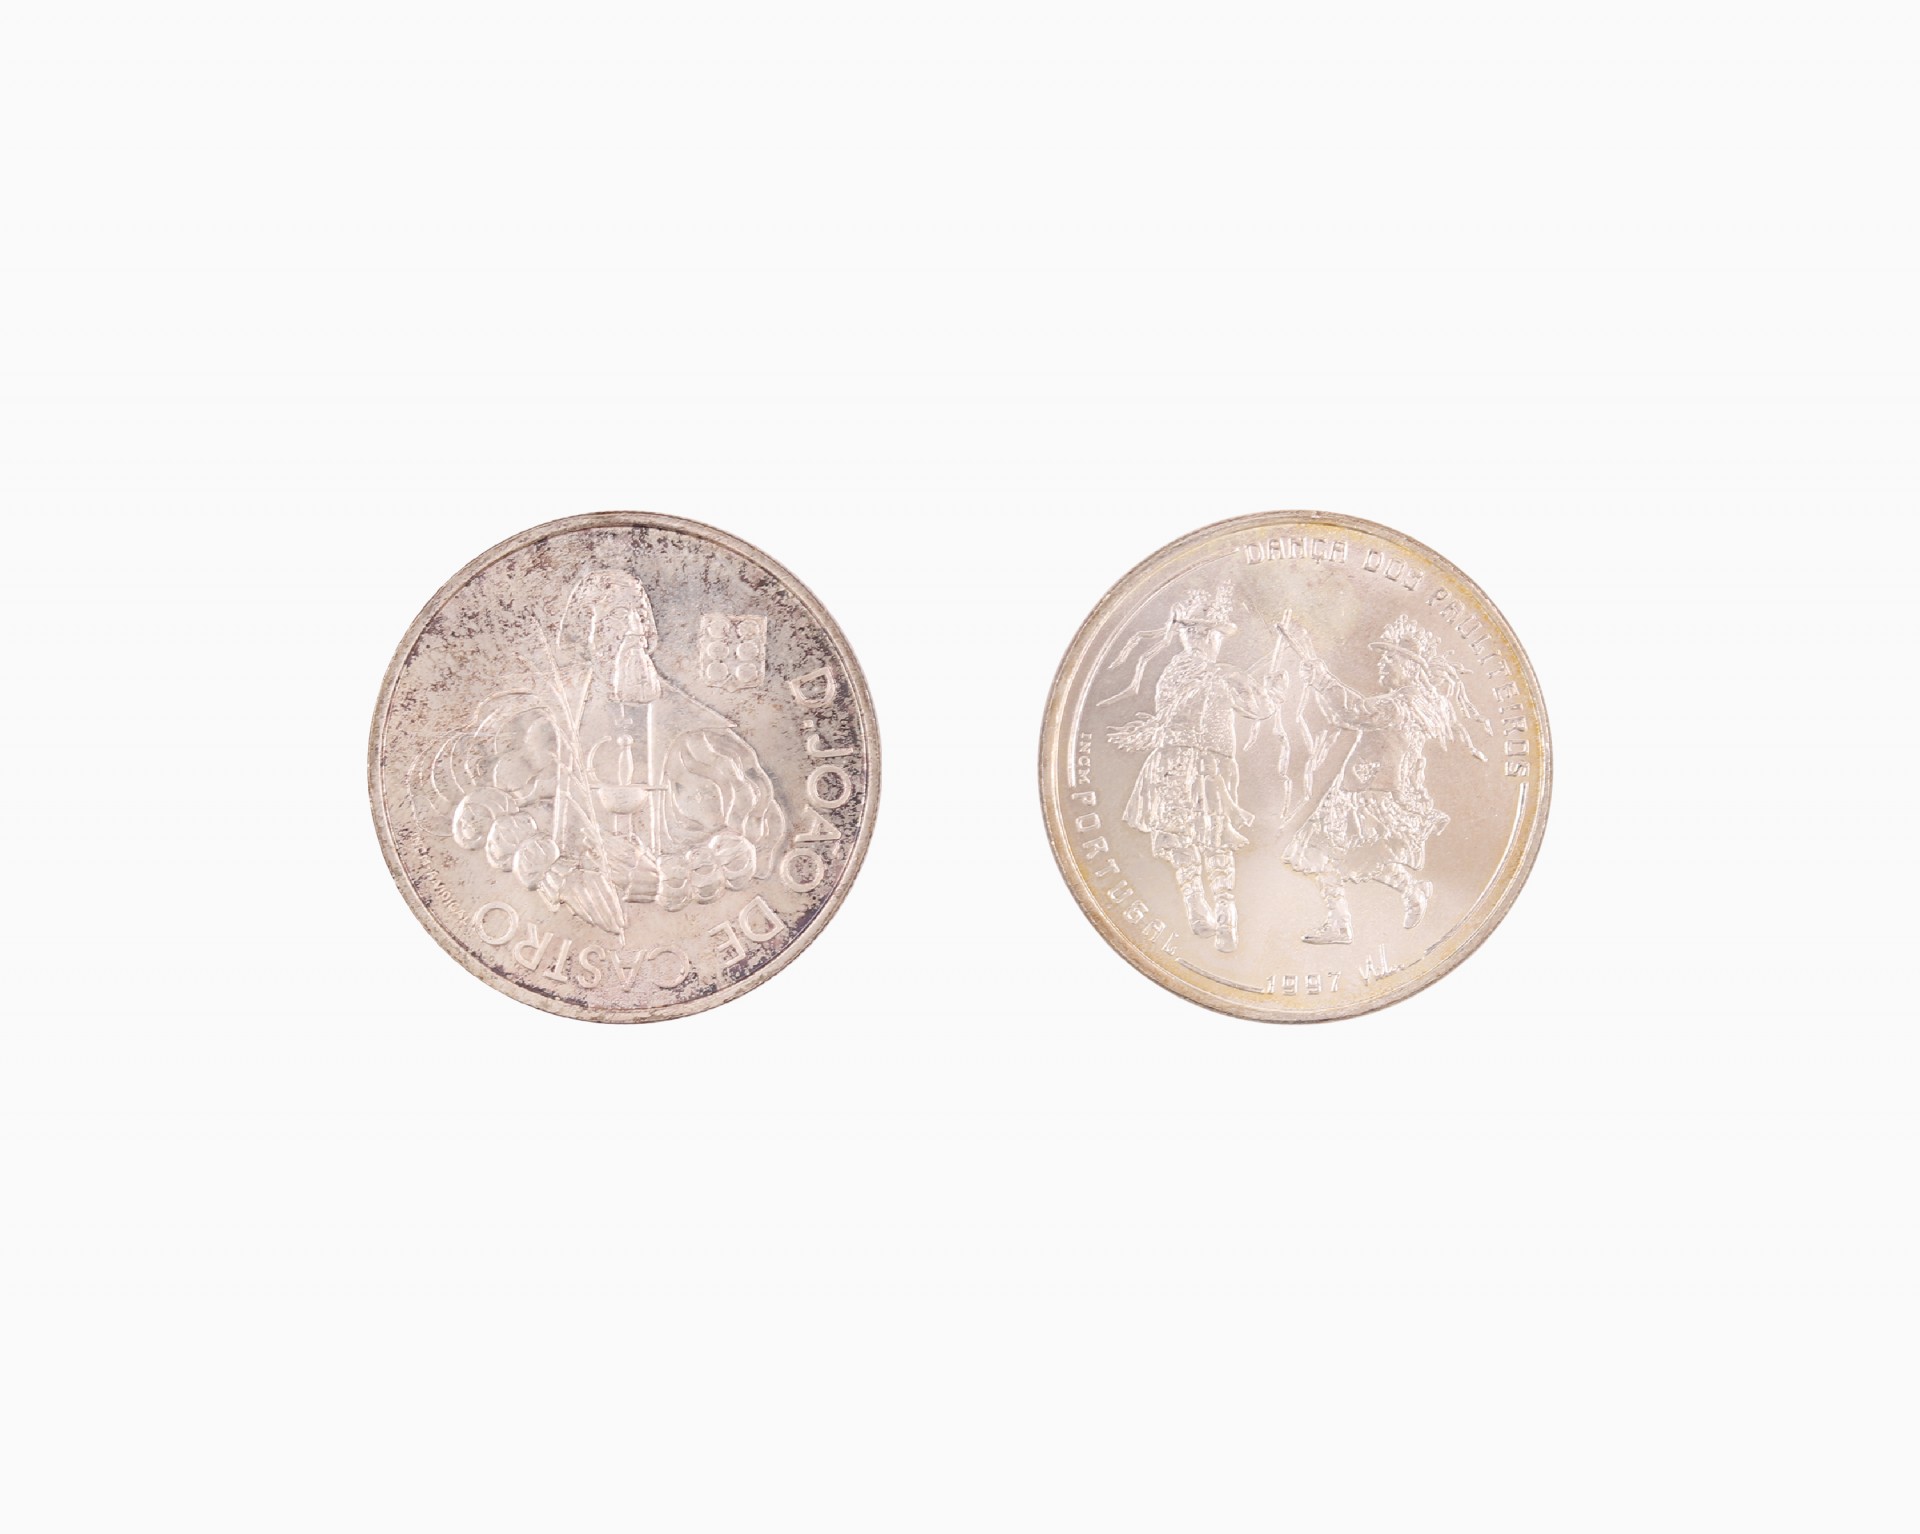 Duas moedas de 1000 escudos em prata 